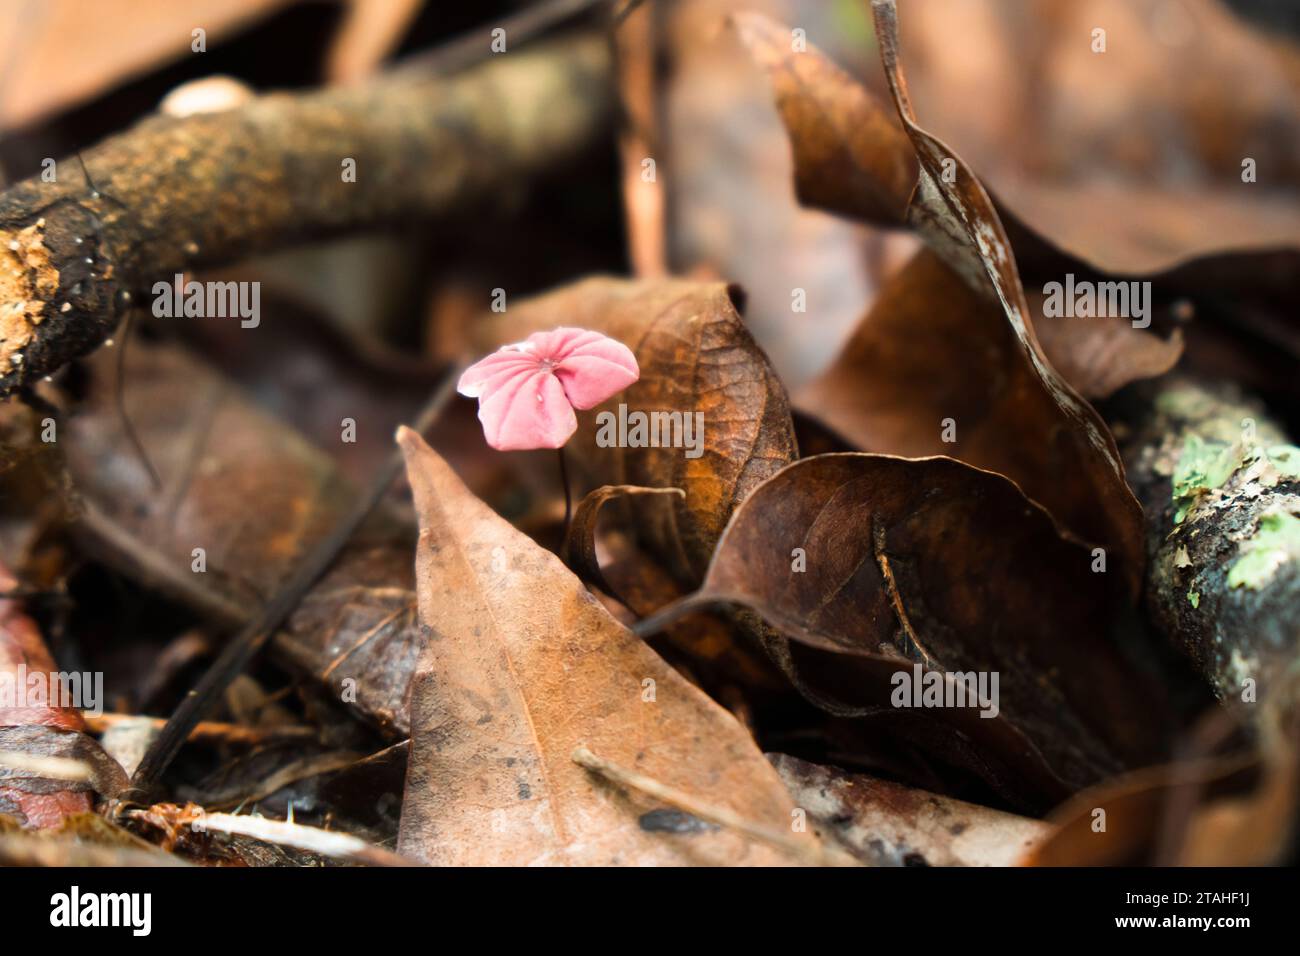 les champignons poussent entre les feuilles séchées sur un sol humide de forêt tropicale Banque D'Images